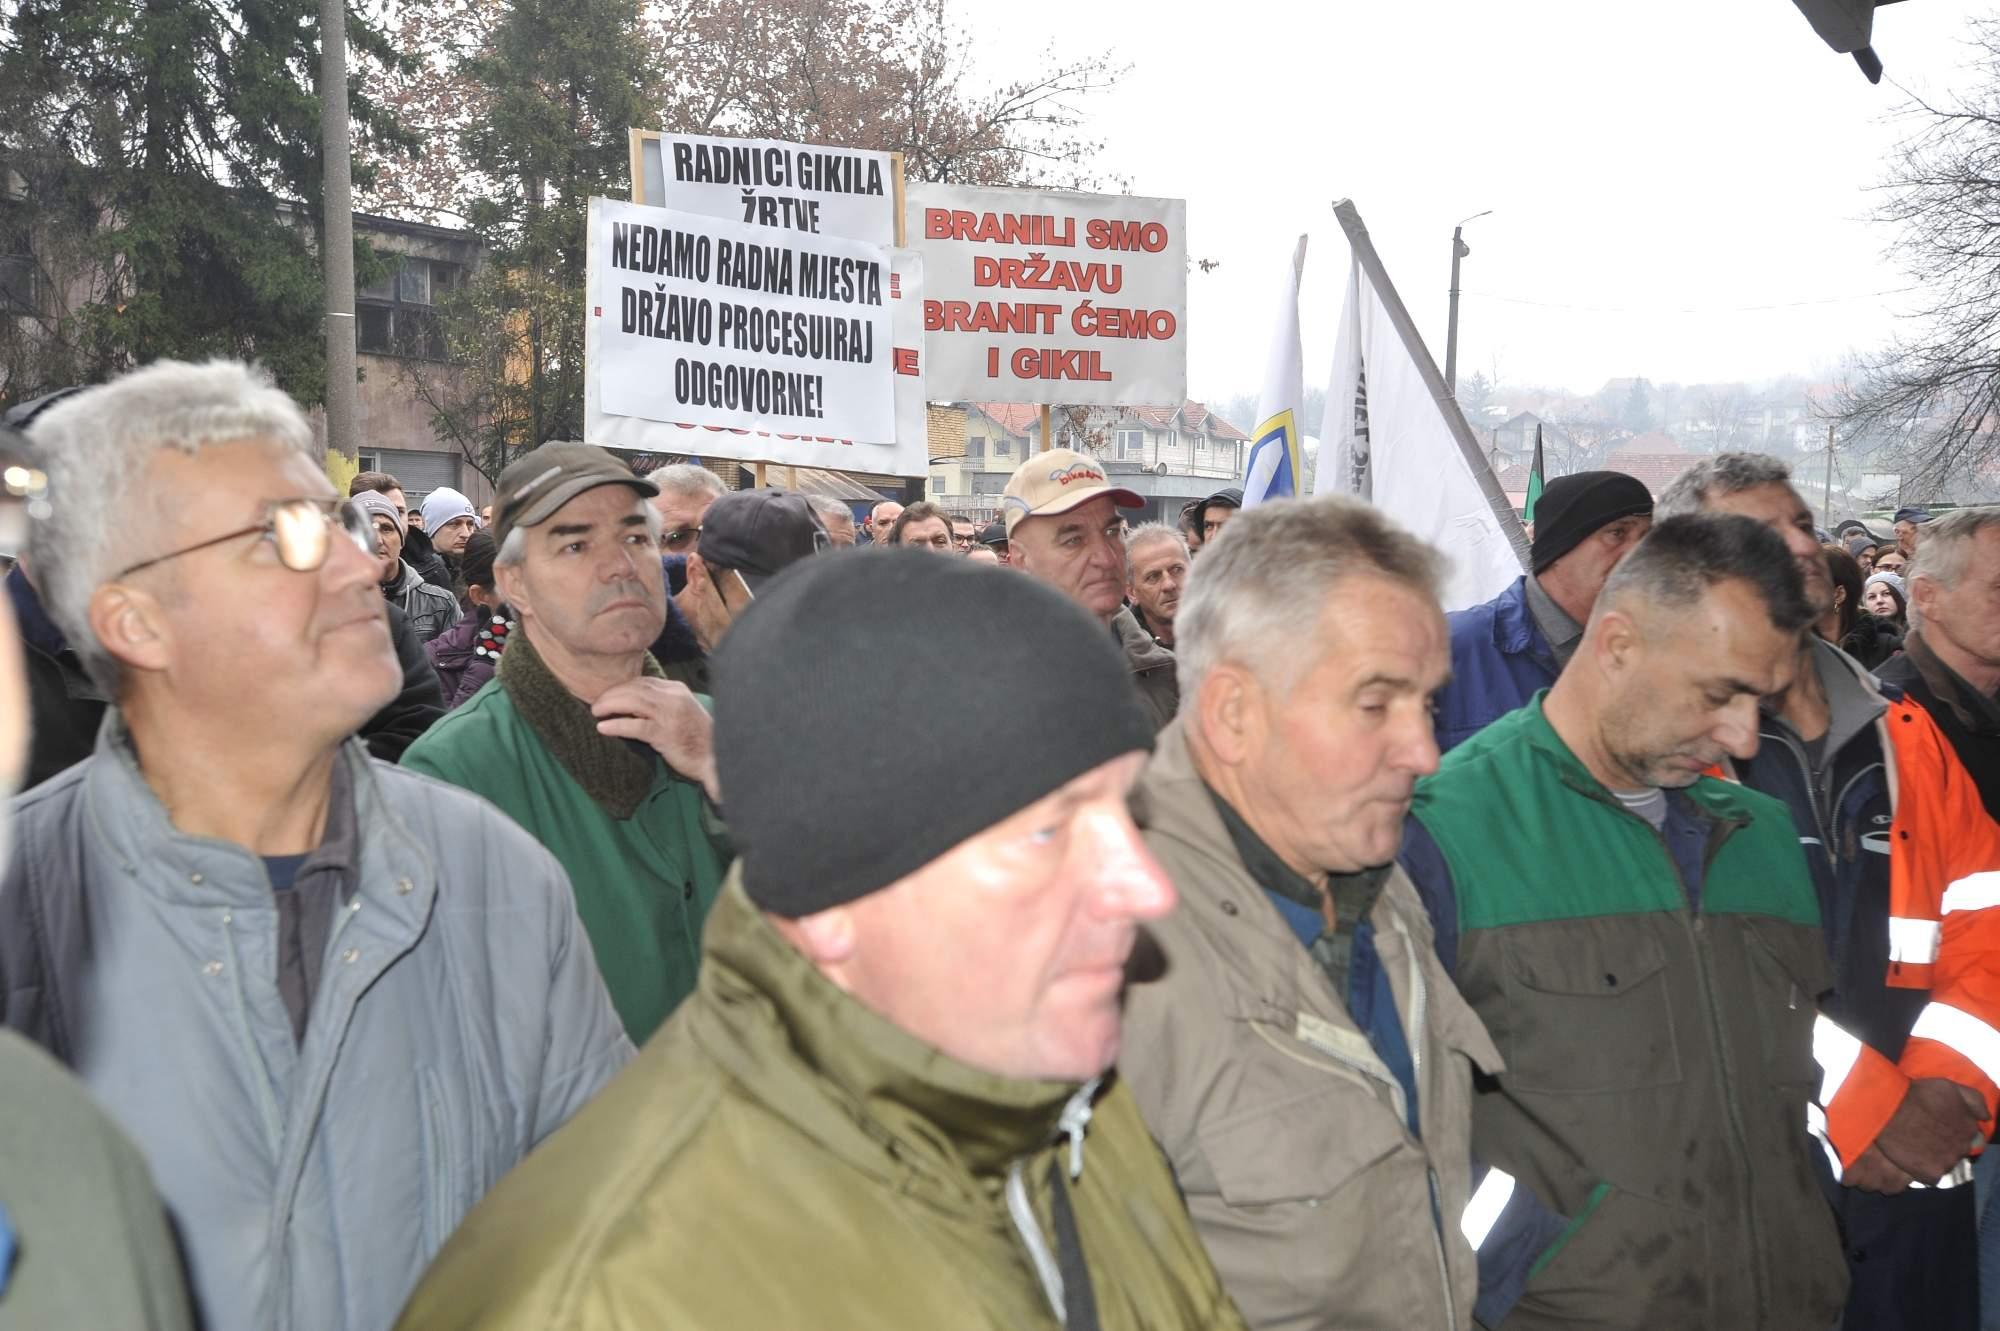 Radnici GIKIL-a danas na protestima pred Vladom FBiH